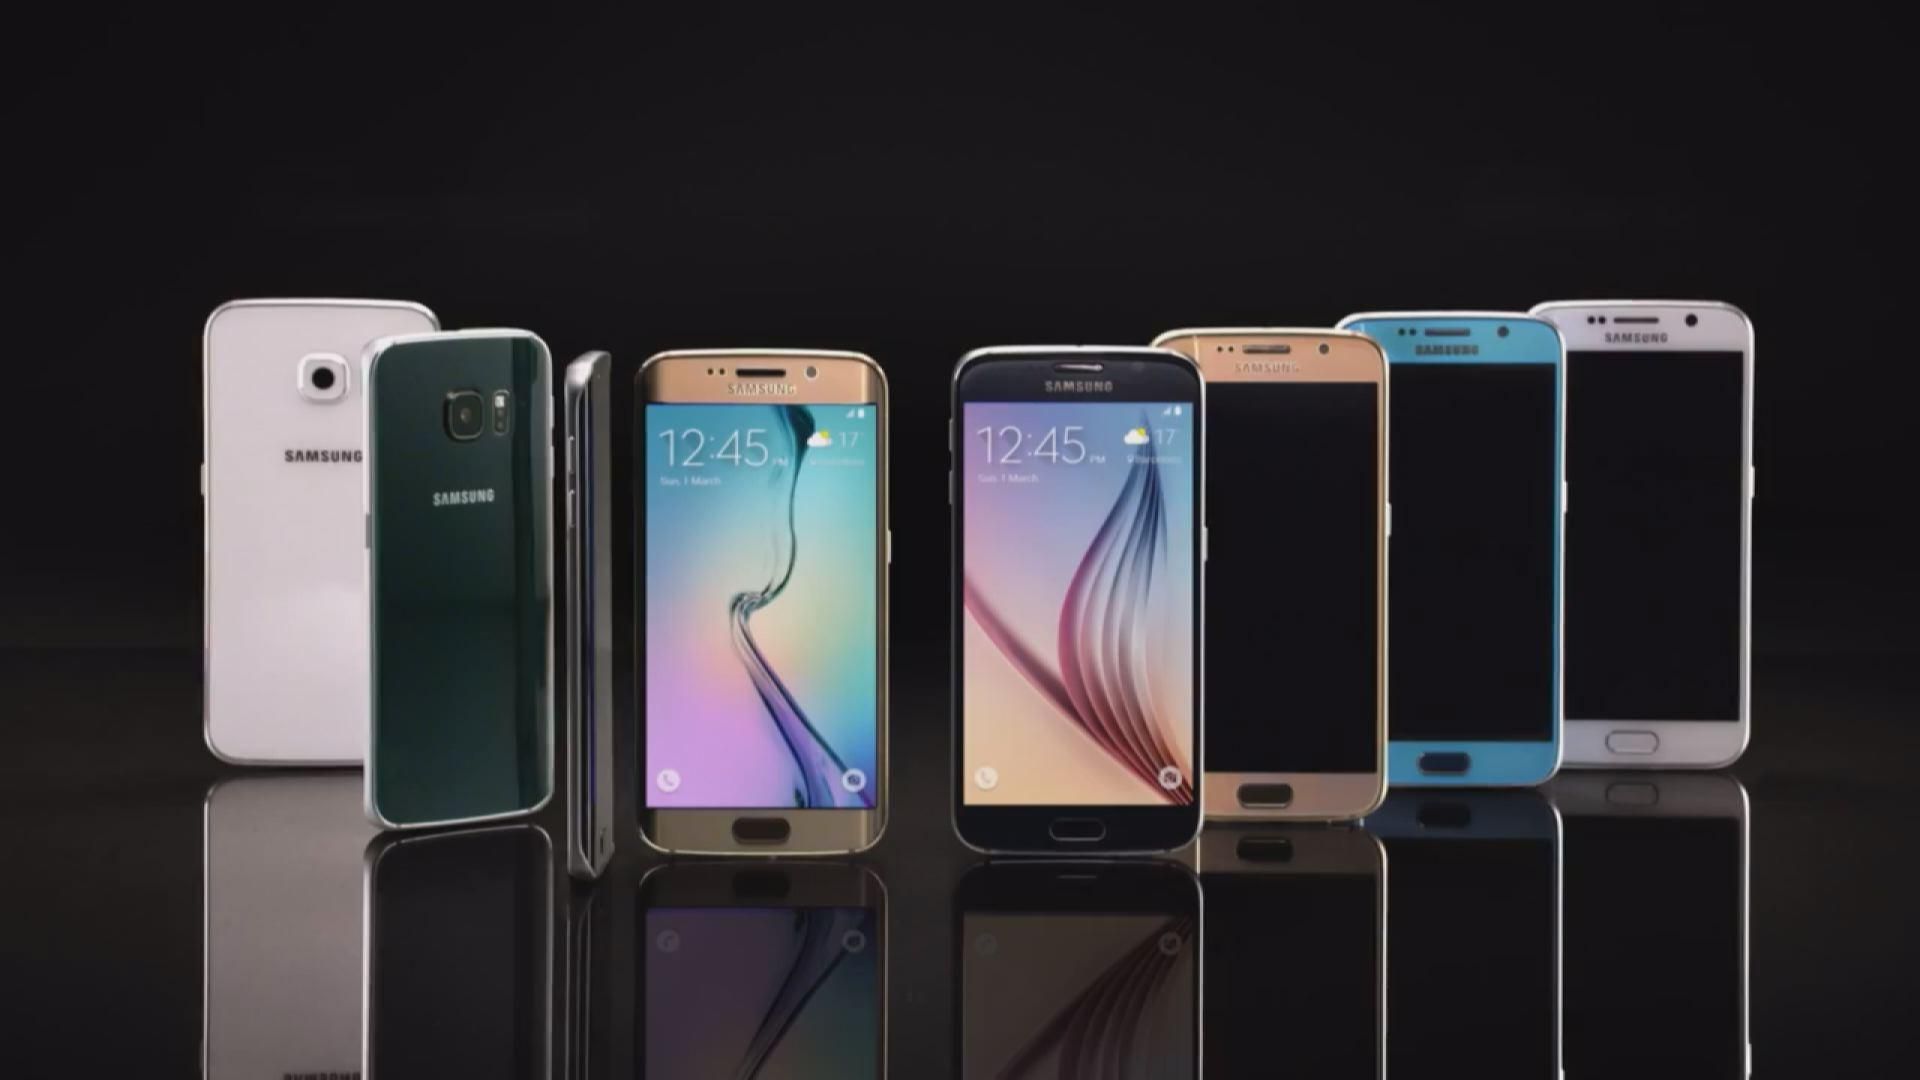 Инновации: известны цены на Samsung Galaxy S6 и Galaxy S6 Edge, изобретен контейнер для ленивых